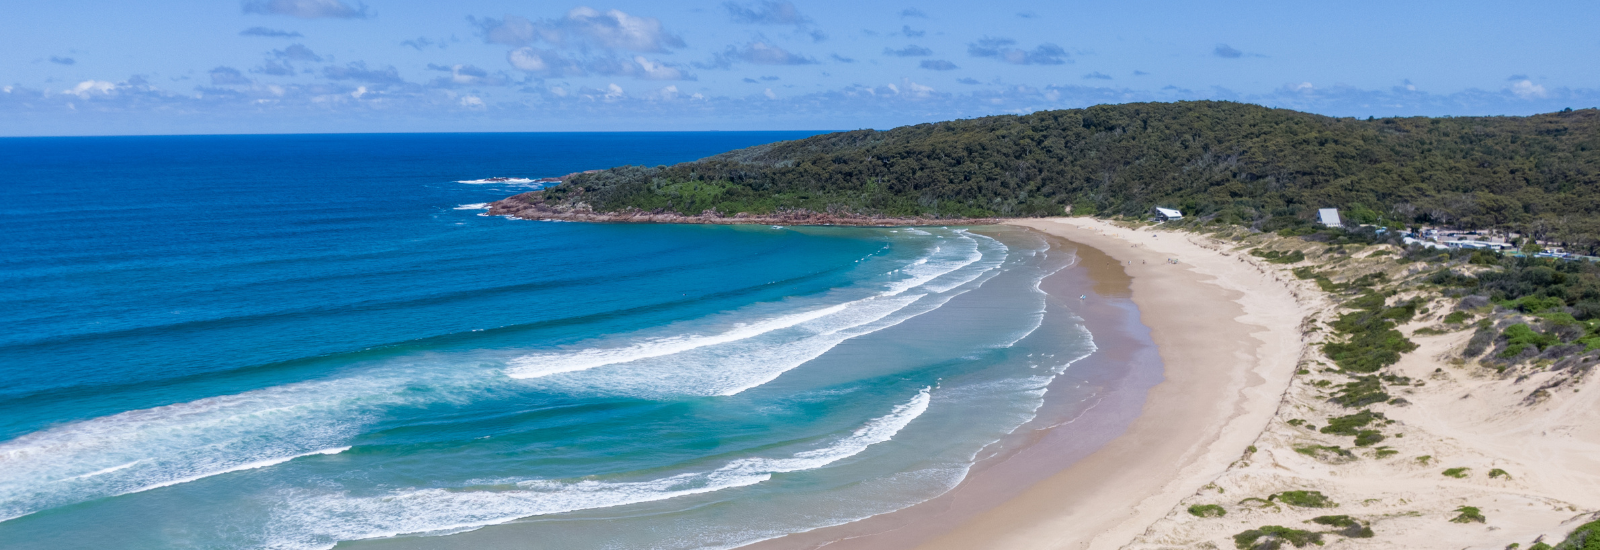 Image of Port Stephens coastline banner image